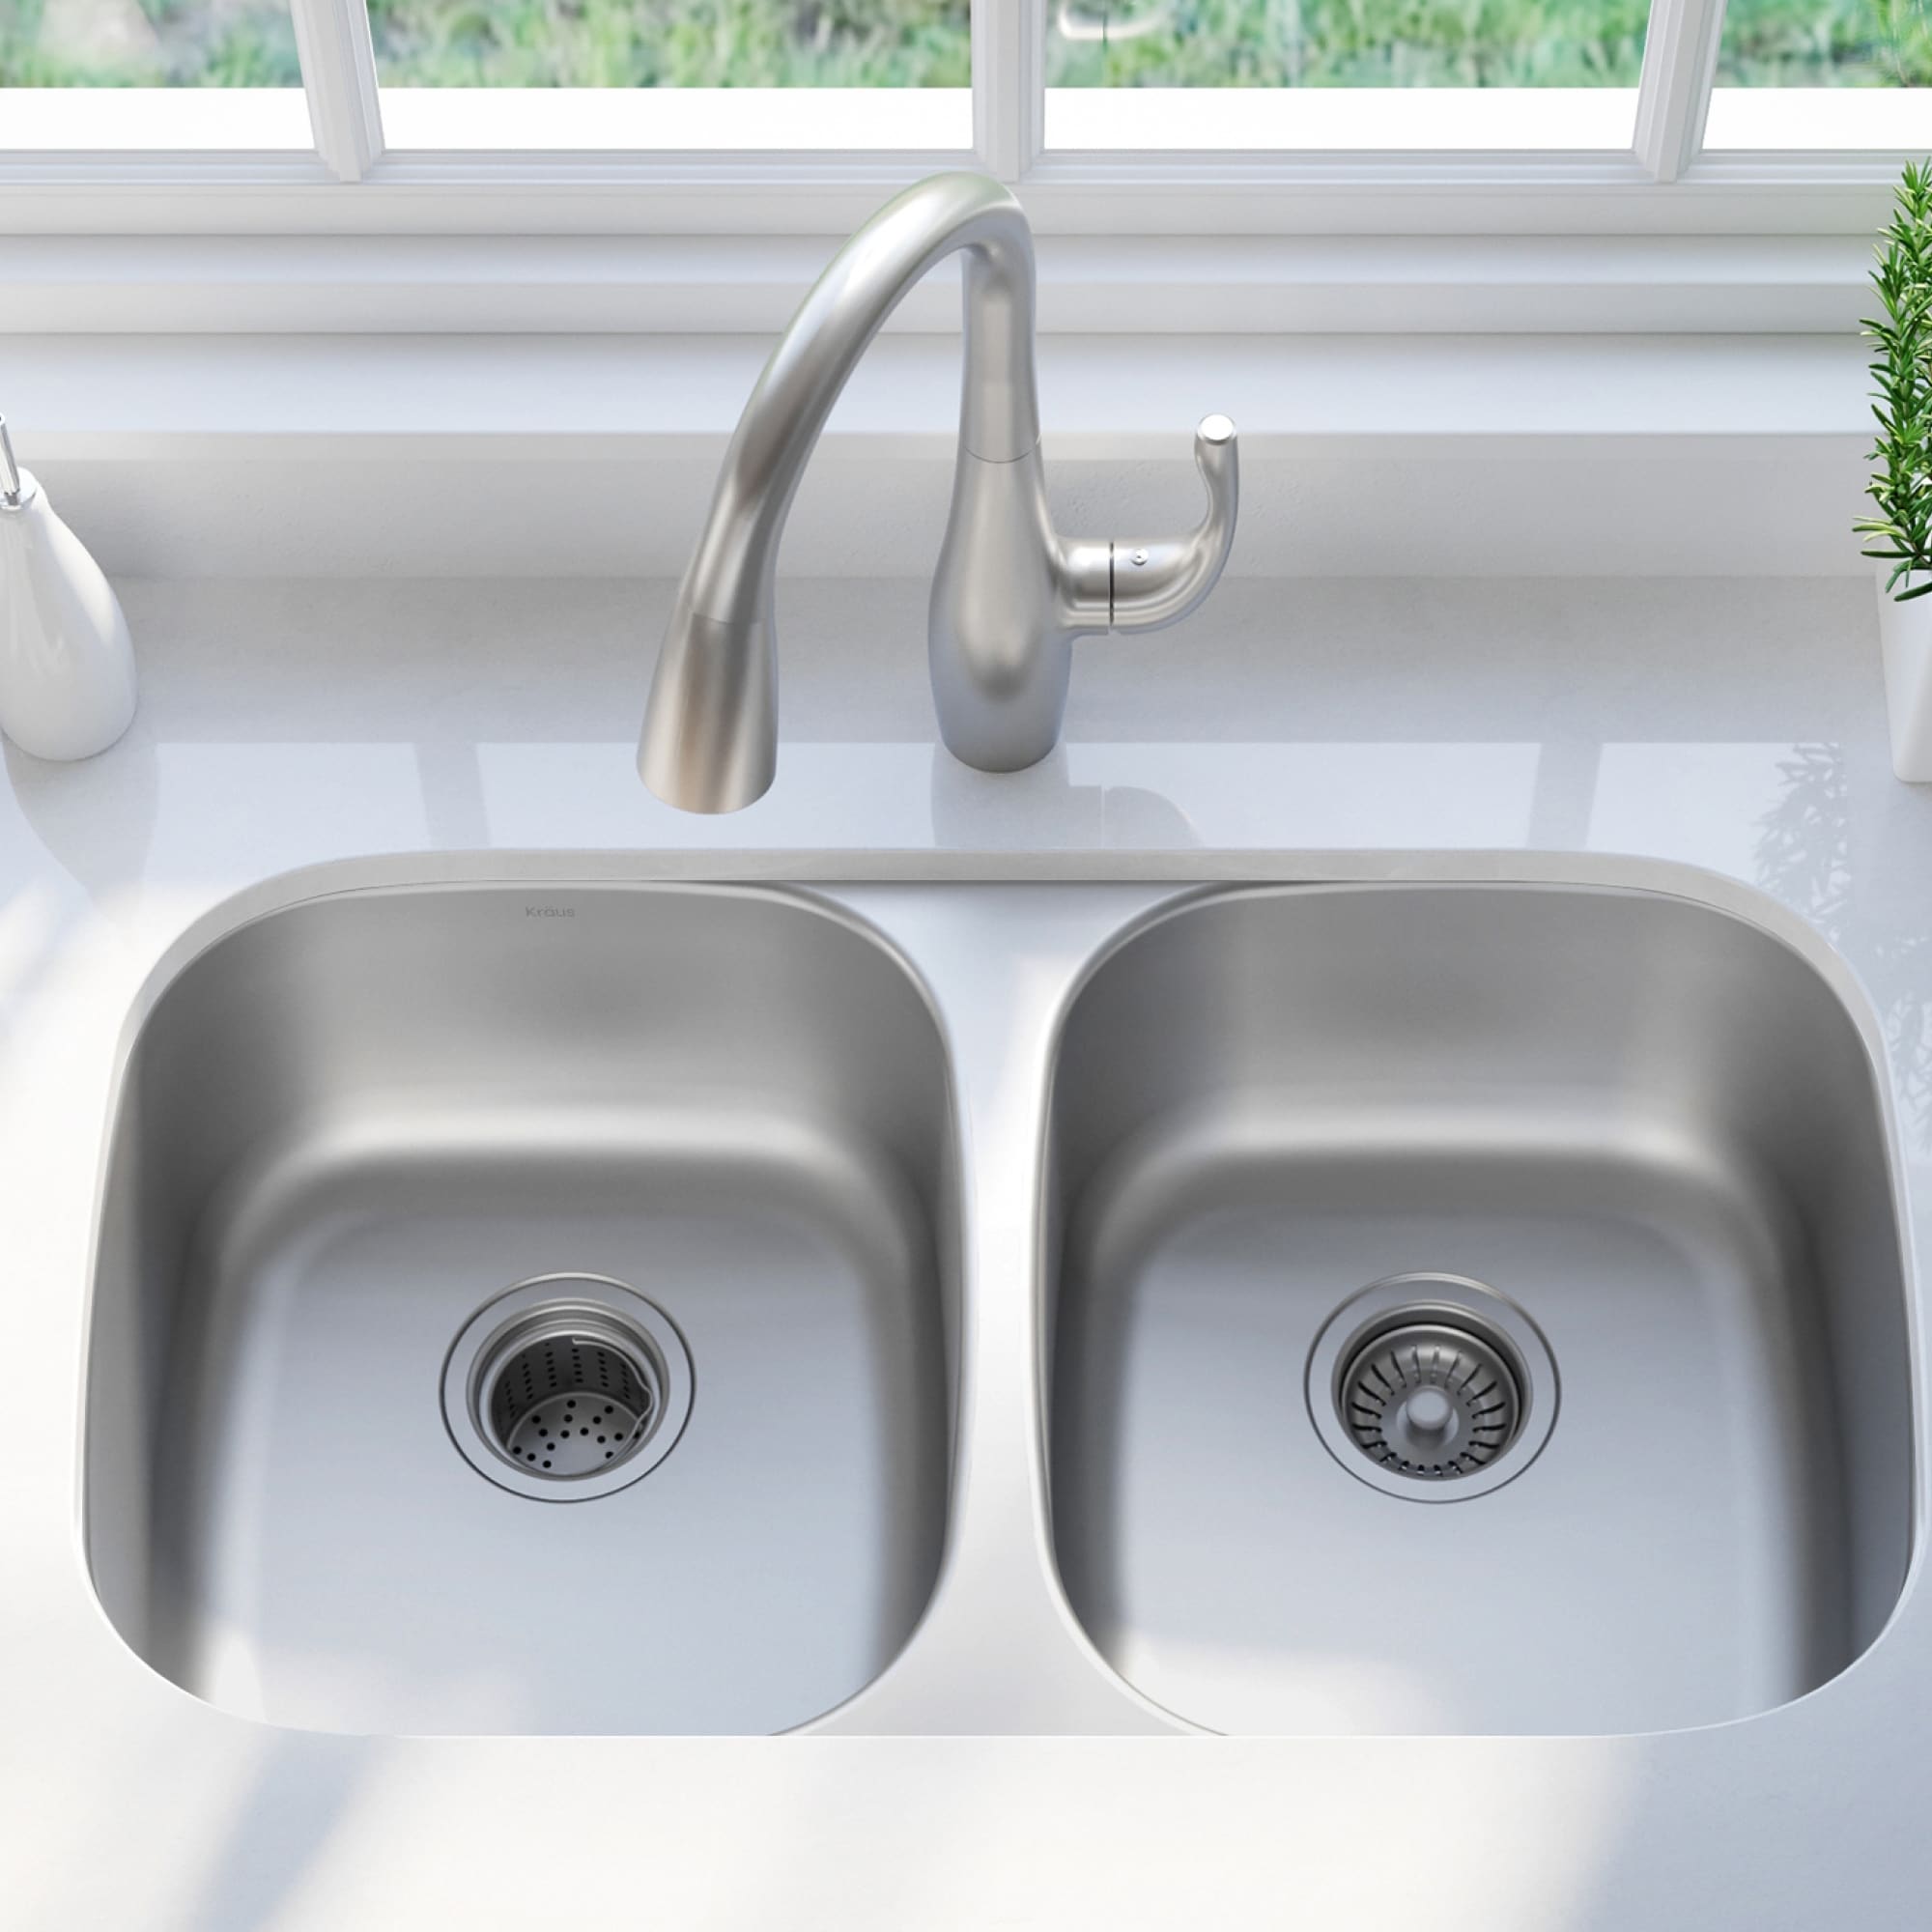 KRAUS Premier Stainless Steel 32 inch 2-Bowl Undermount Kitchen Sink On  Sale Bed Bath  Beyond 4282014